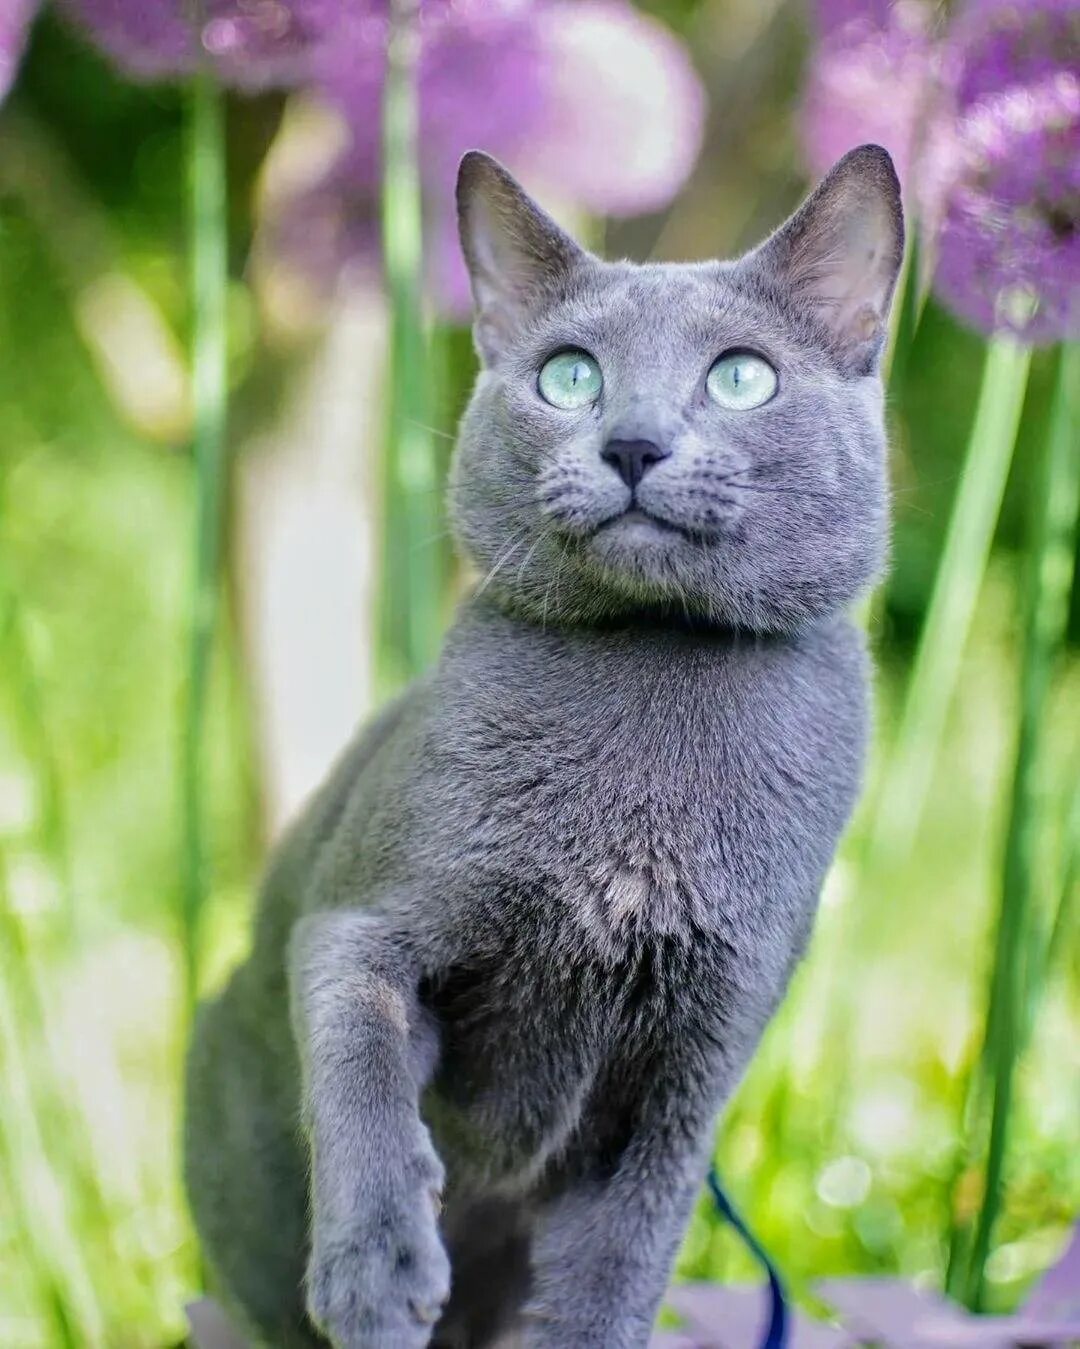 Сибирский голубая кошка короткошерстная. Картезианская кошка голубая. Кошка Сибирская голубая гладкошерстная. Среднерусская голубая кошка. Порода голубых кошек